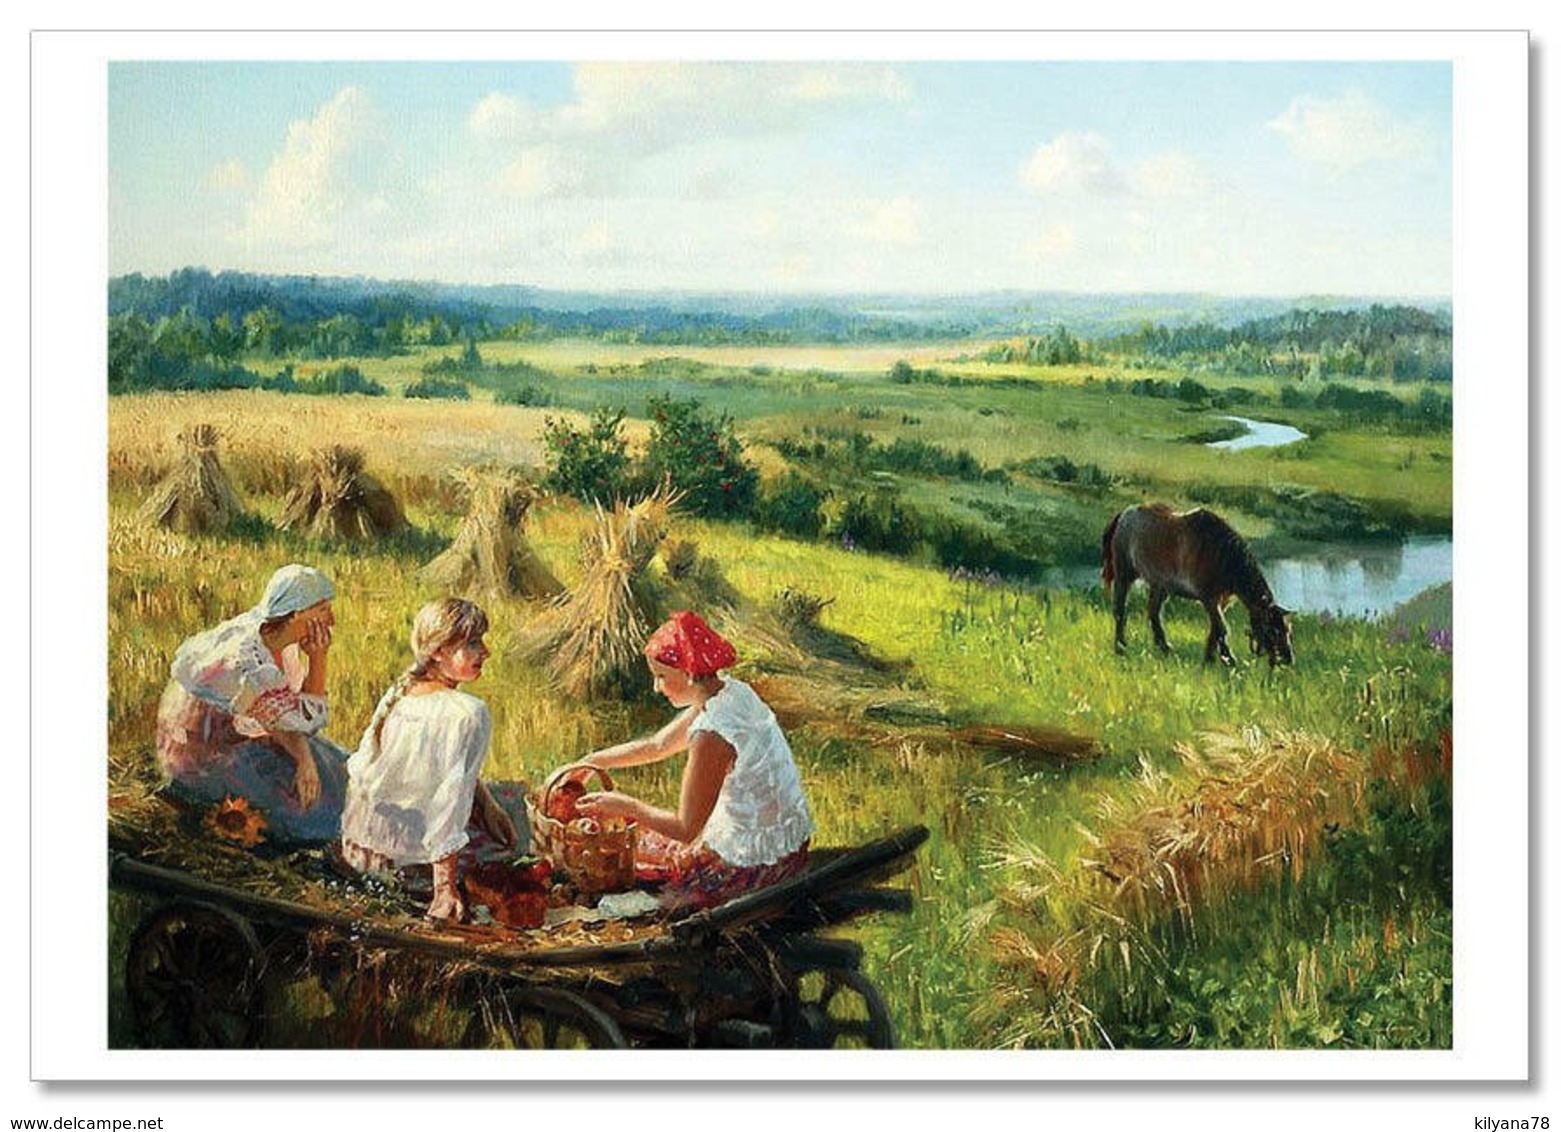 WOMANS Breakfast In Field Harvest Russian Ethnic By Zhdanov Modern Postcard - Europe